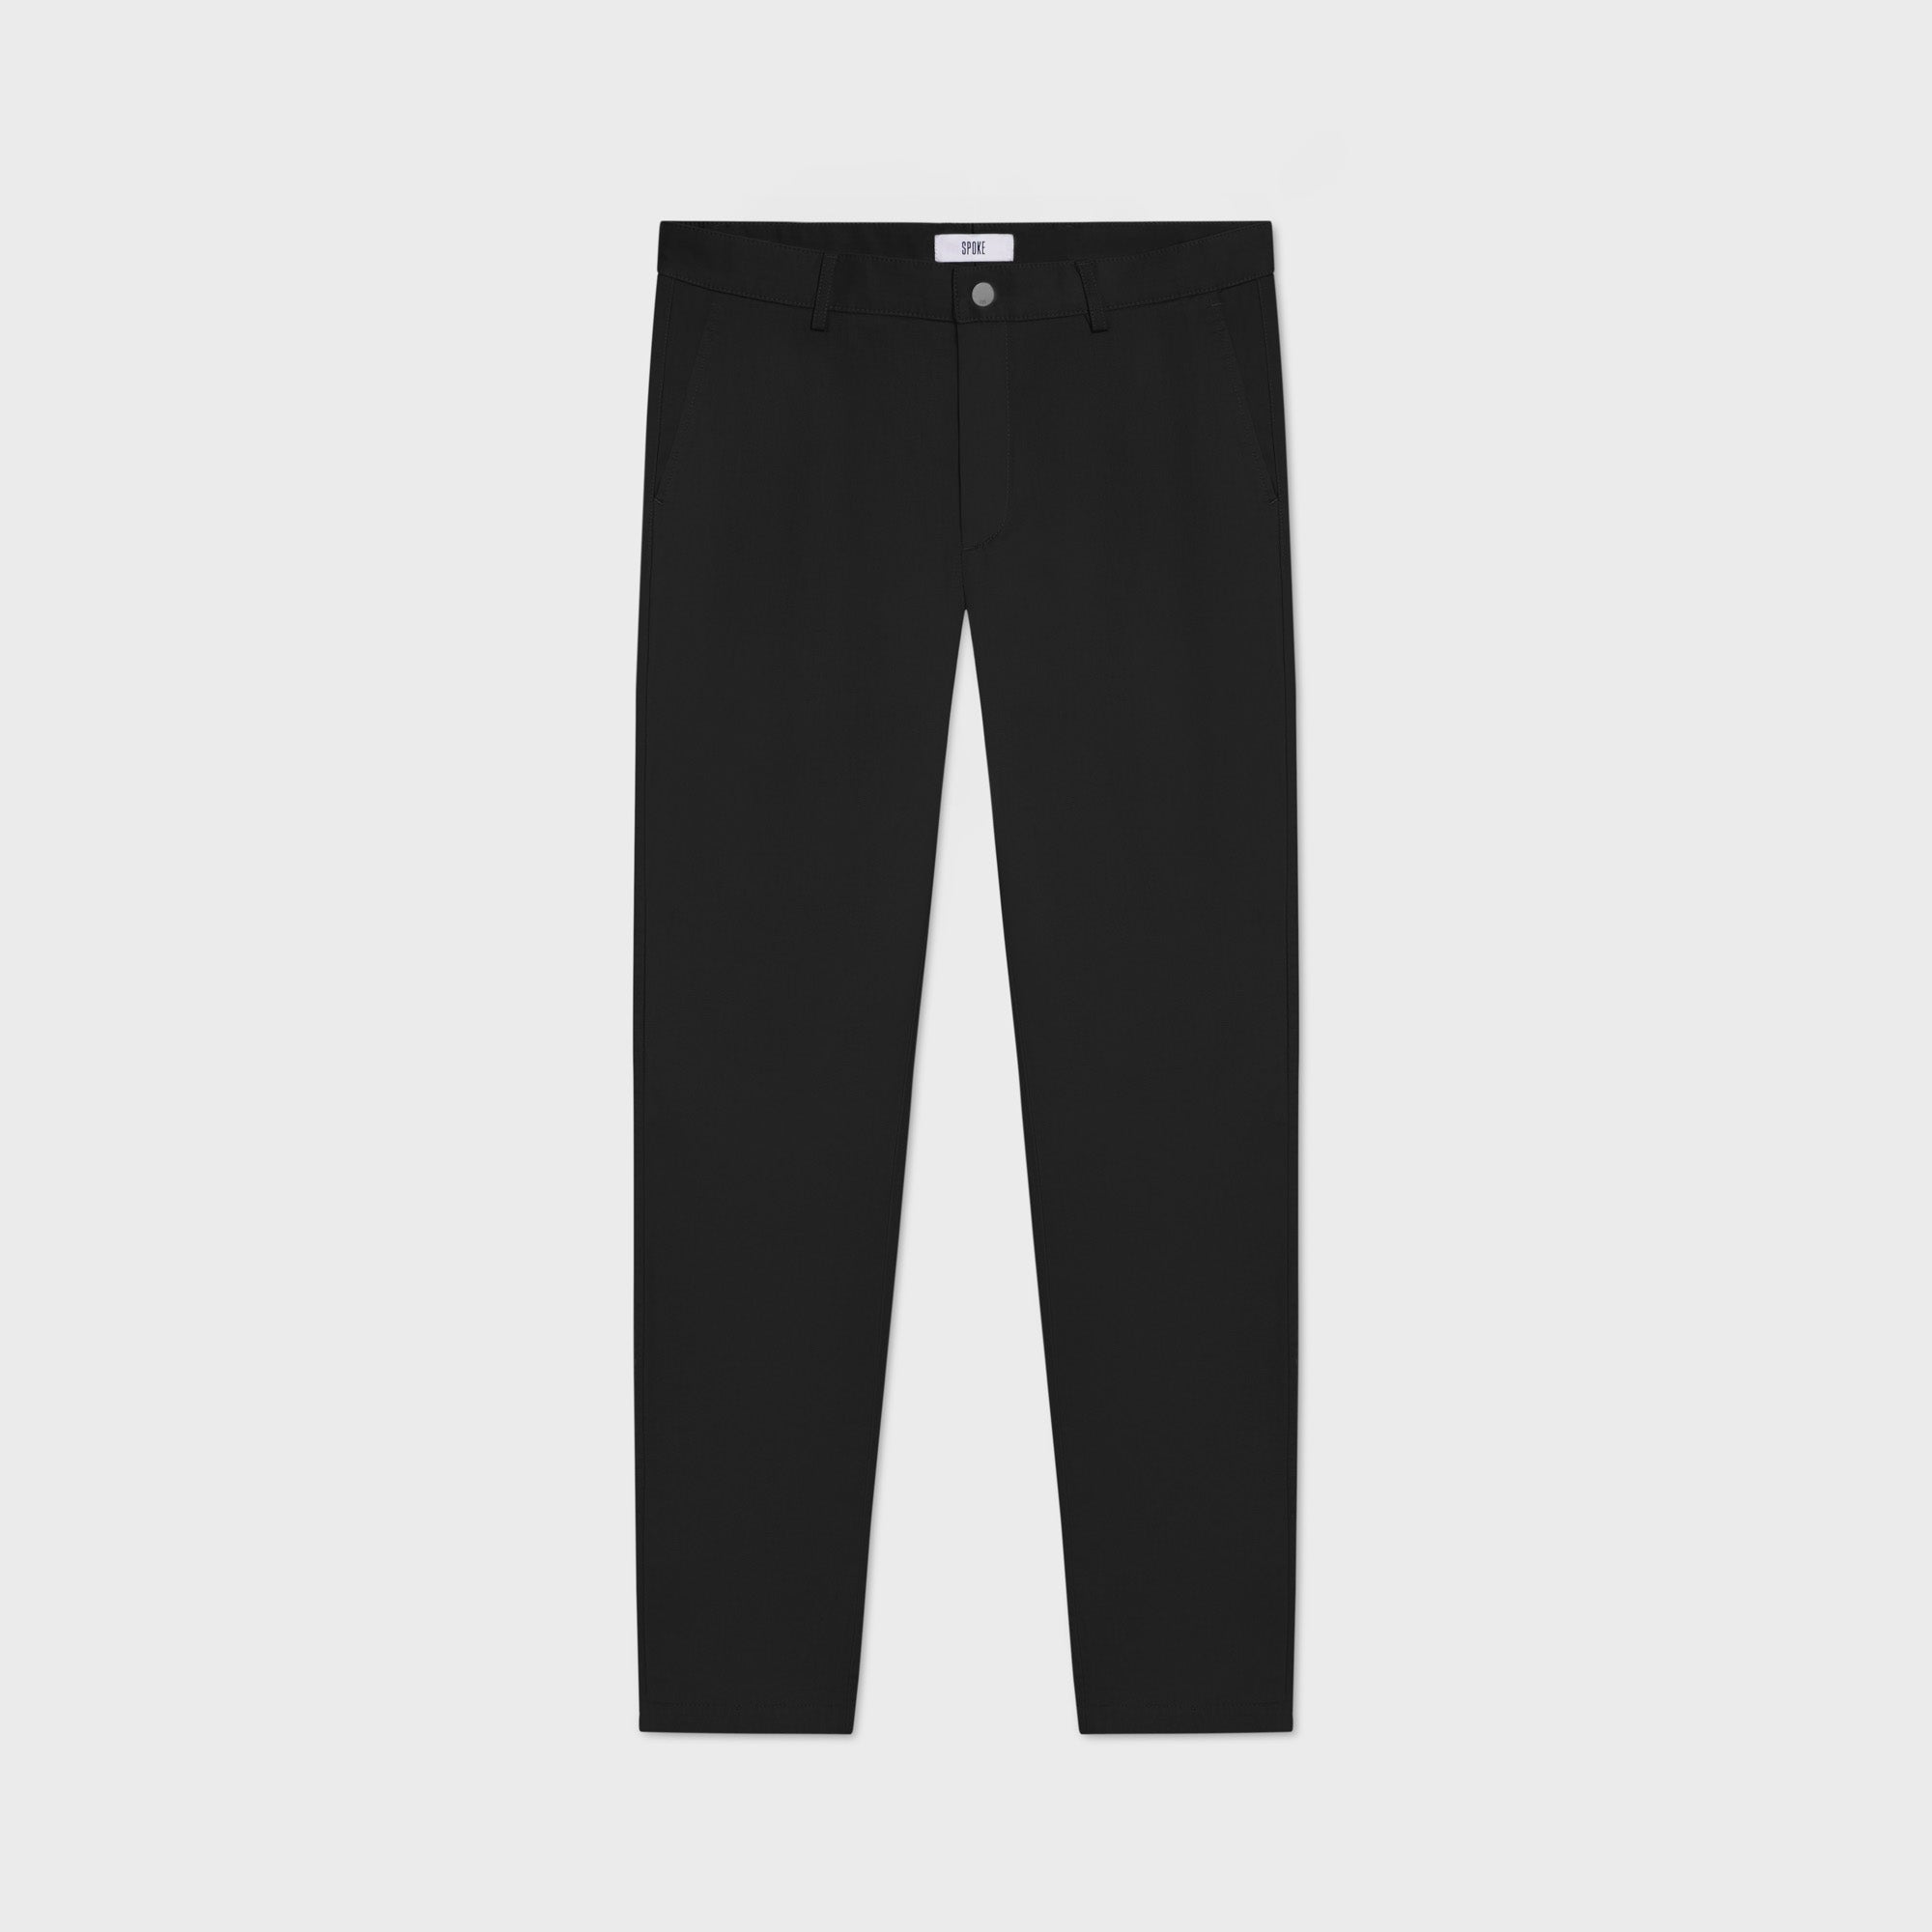 Black Heroes - Everyday Men's Custom Fit Chino Pants - SPOKE - SPOKE